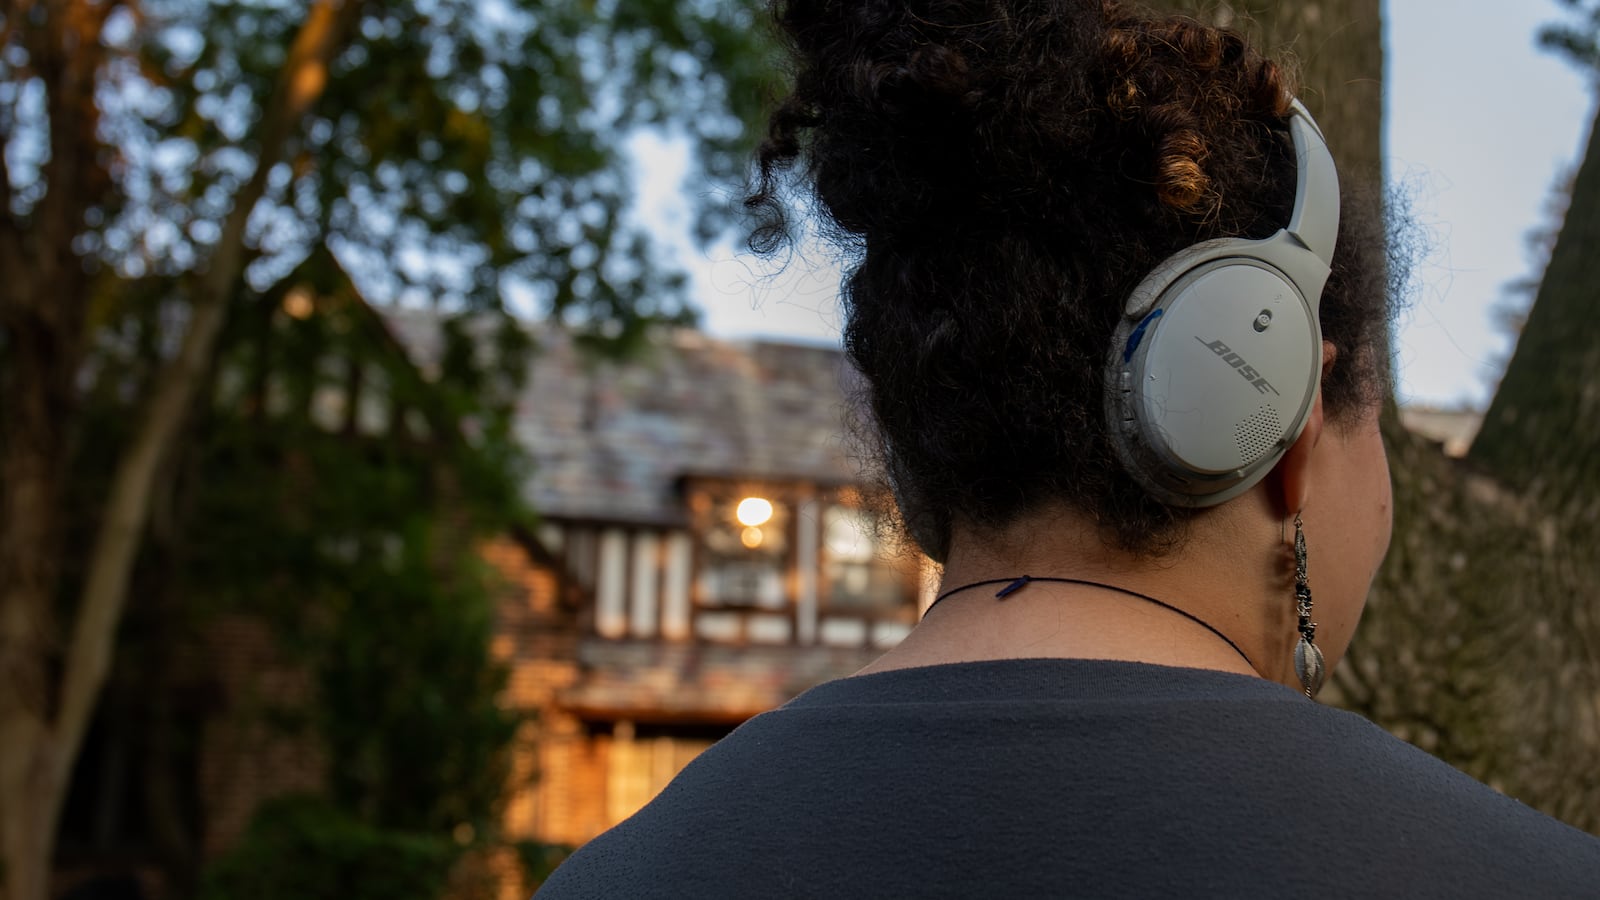 A teen wearing headphones is standing outside in a leafy neighborhood. 